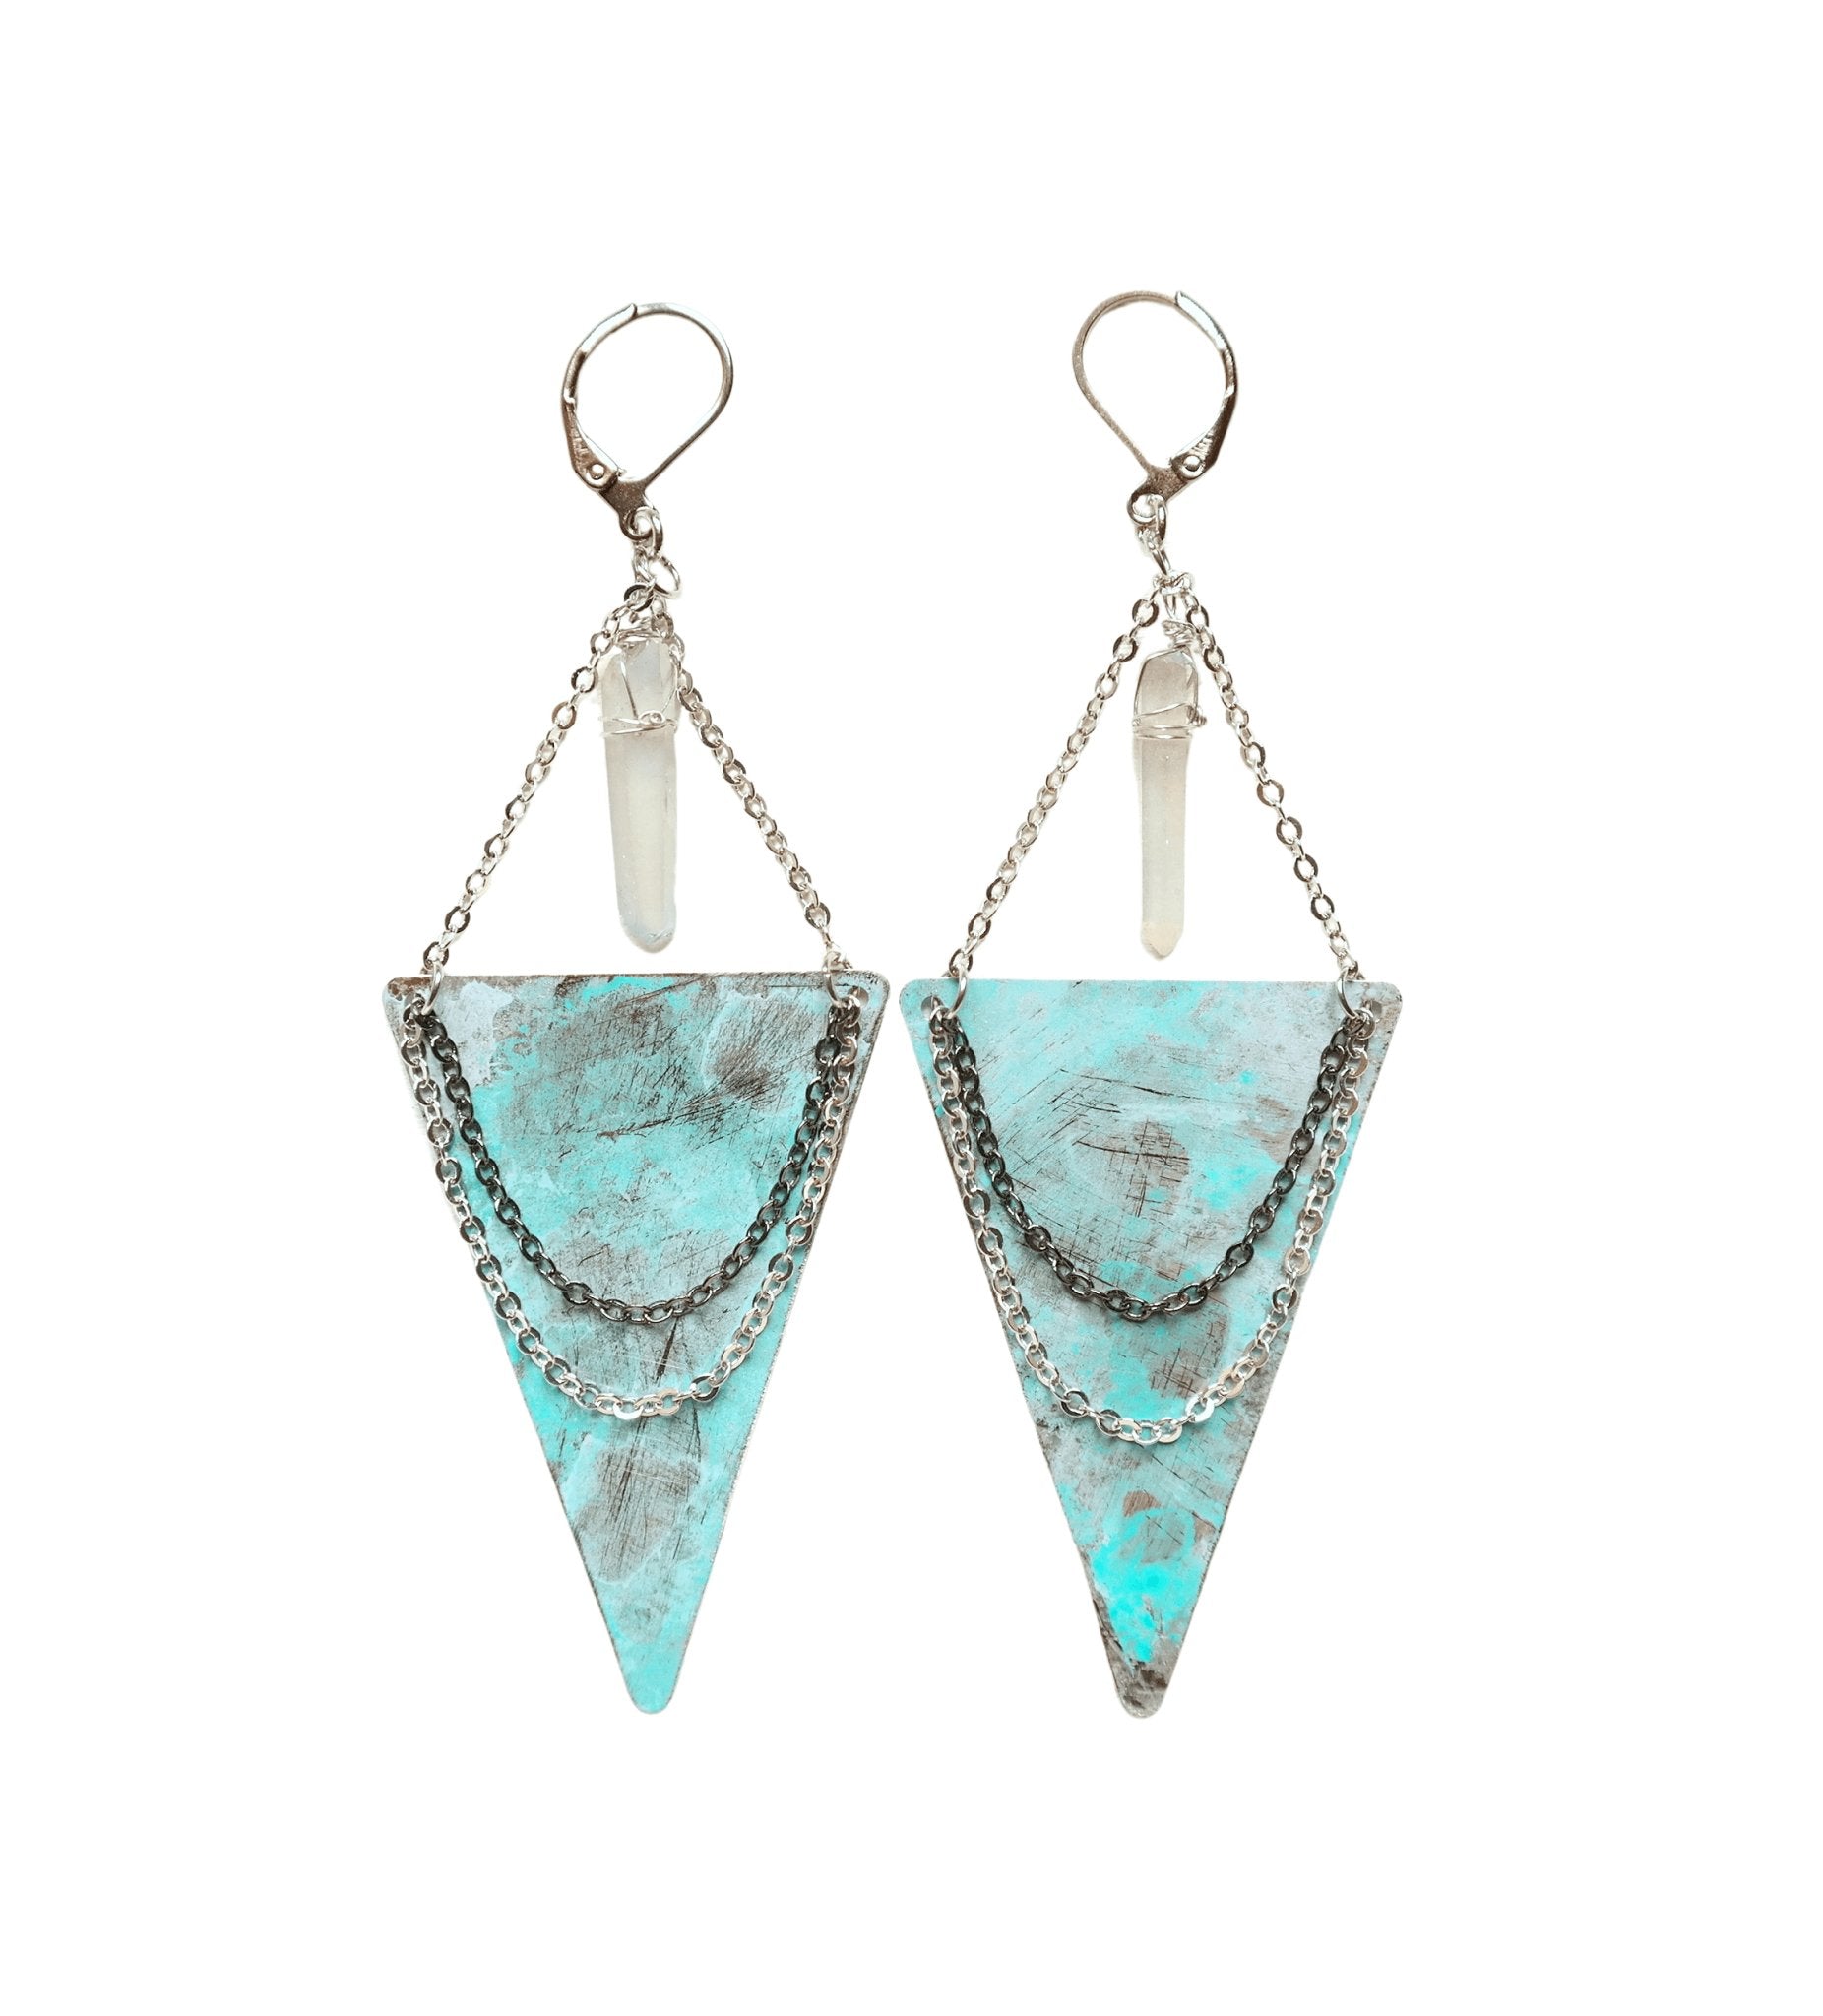 Triangle Chandelier Earrings with Quartz - Gypsy Soul Jewellery